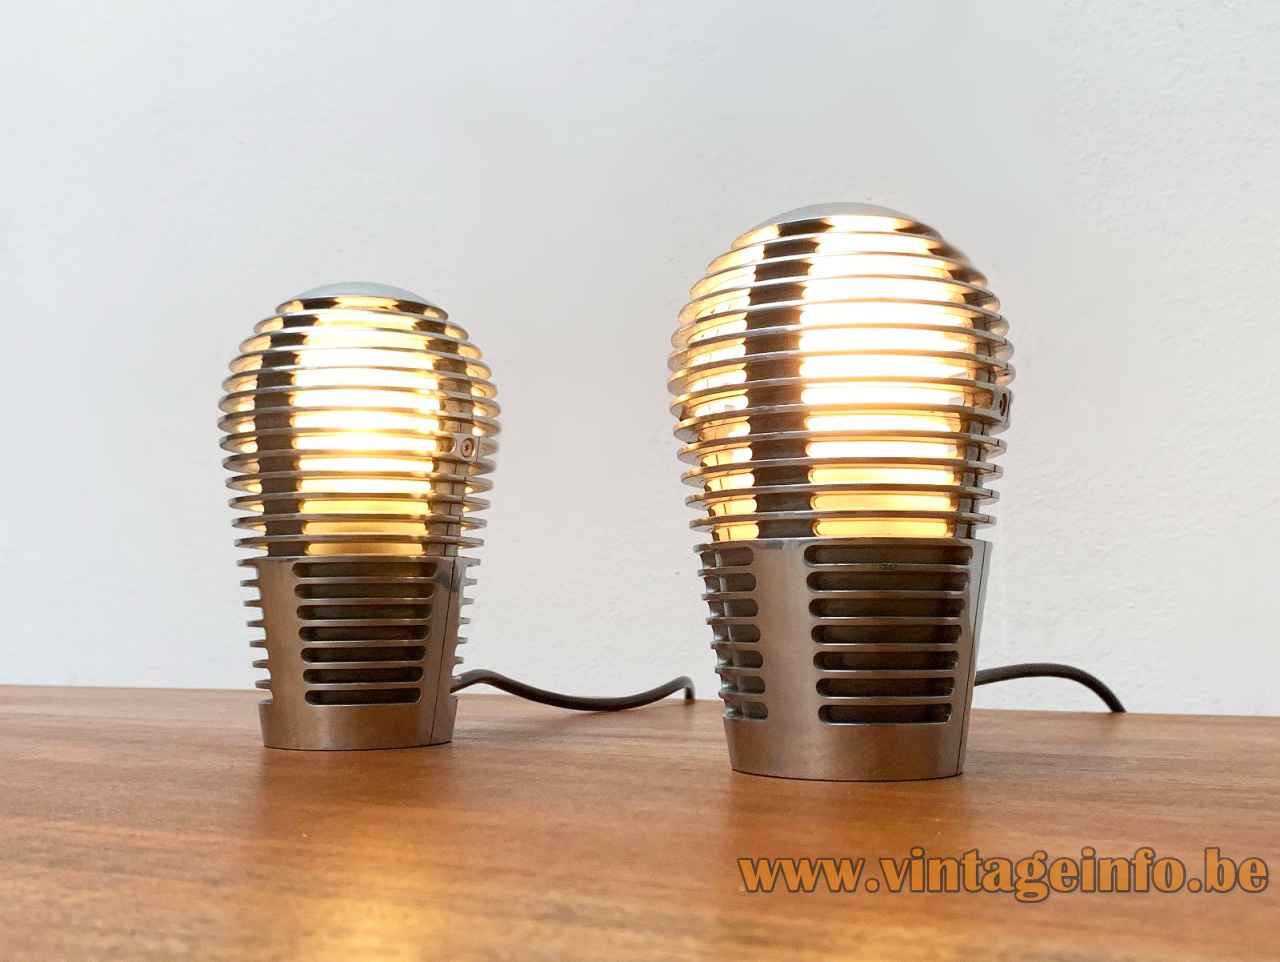 Metalarte Zen table lamp conical radial perforations zamac lampshade 1989 design: Óscar & Sergi Devesa Spain pair